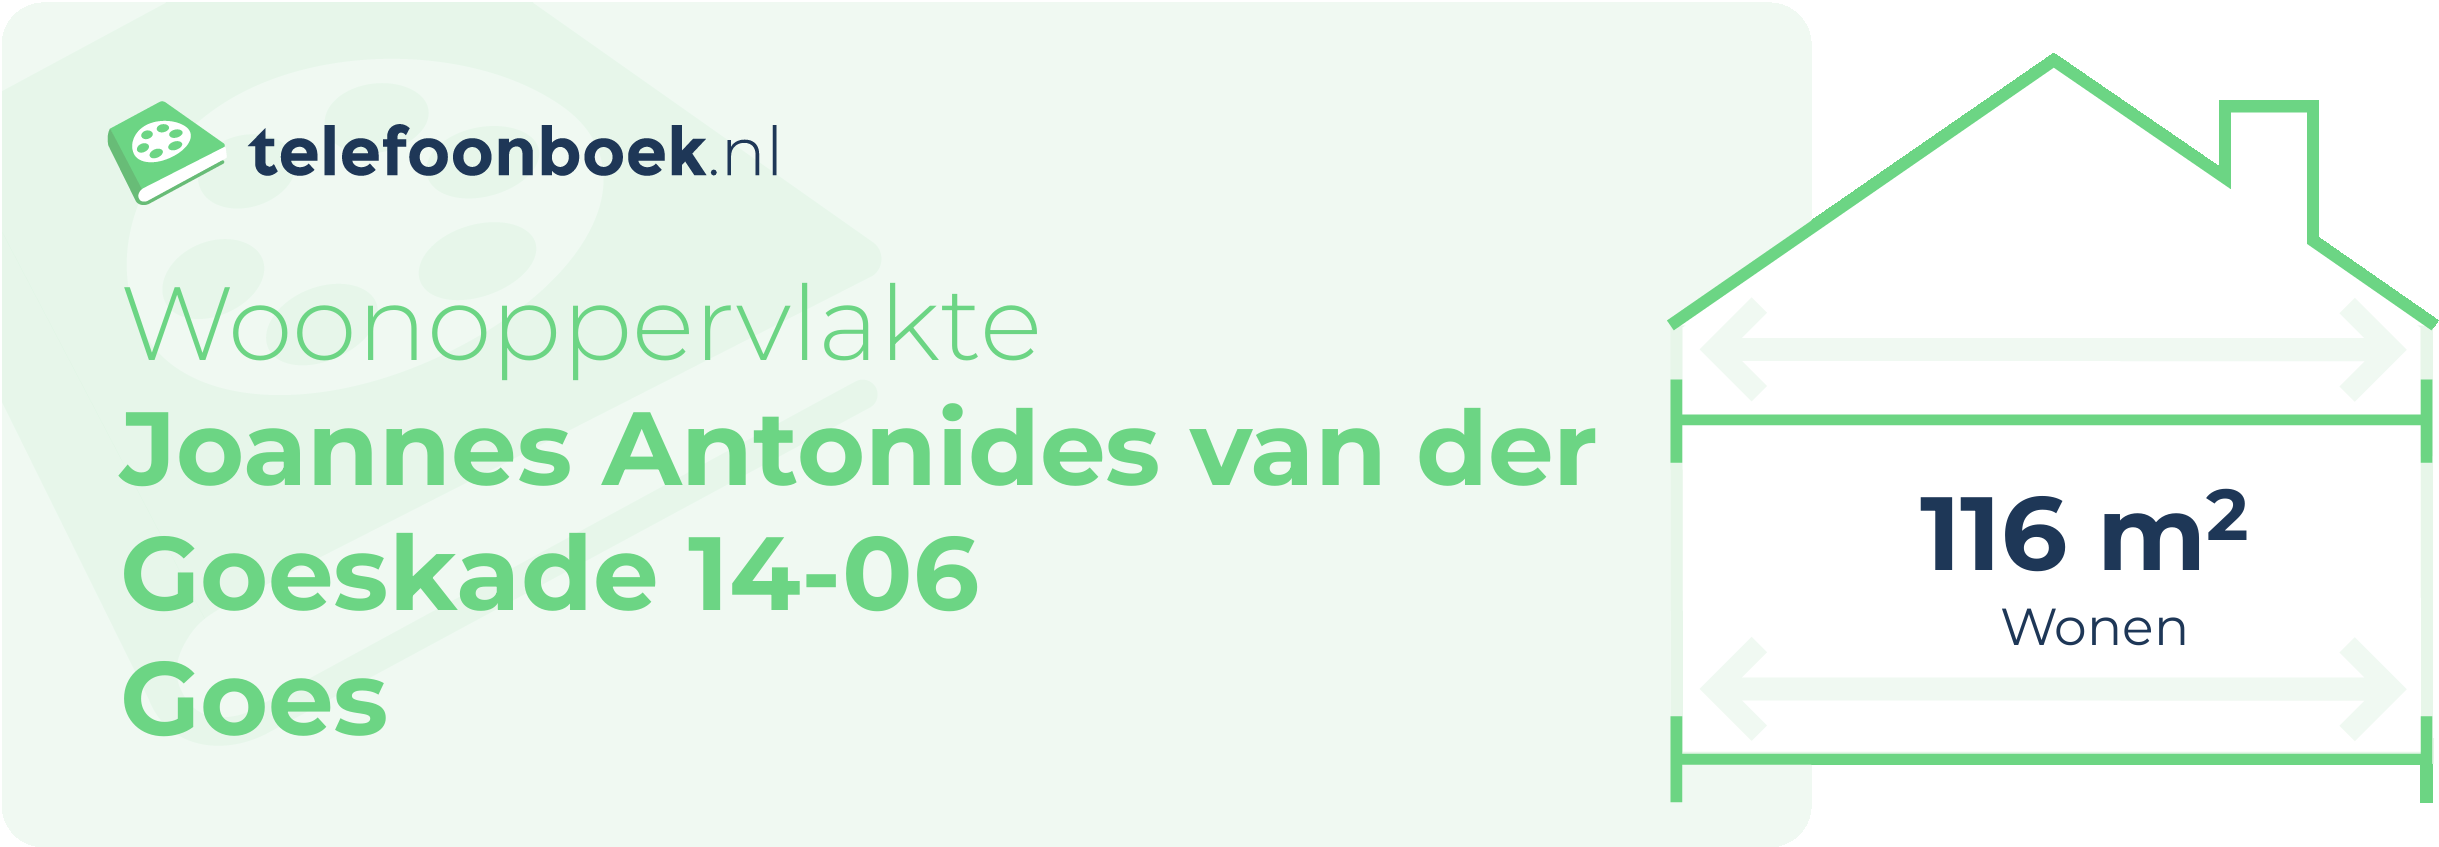 Woonoppervlakte Joannes Antonides Van Der Goeskade 14-06 Goes